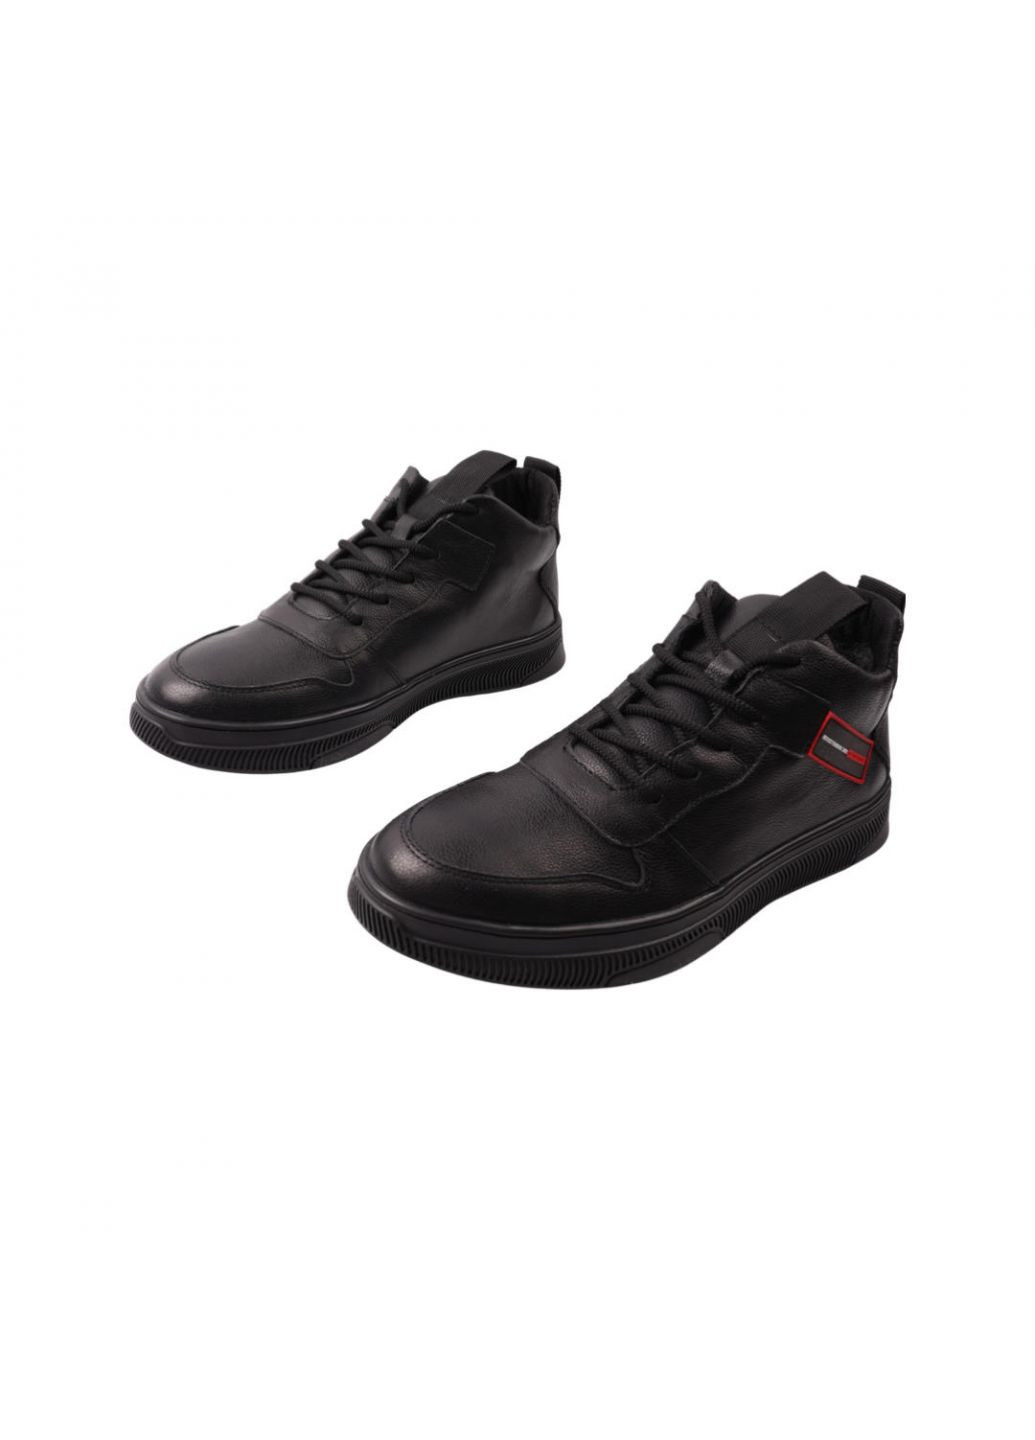 Черные ботинки мужские черные натуральная кожа Visazh